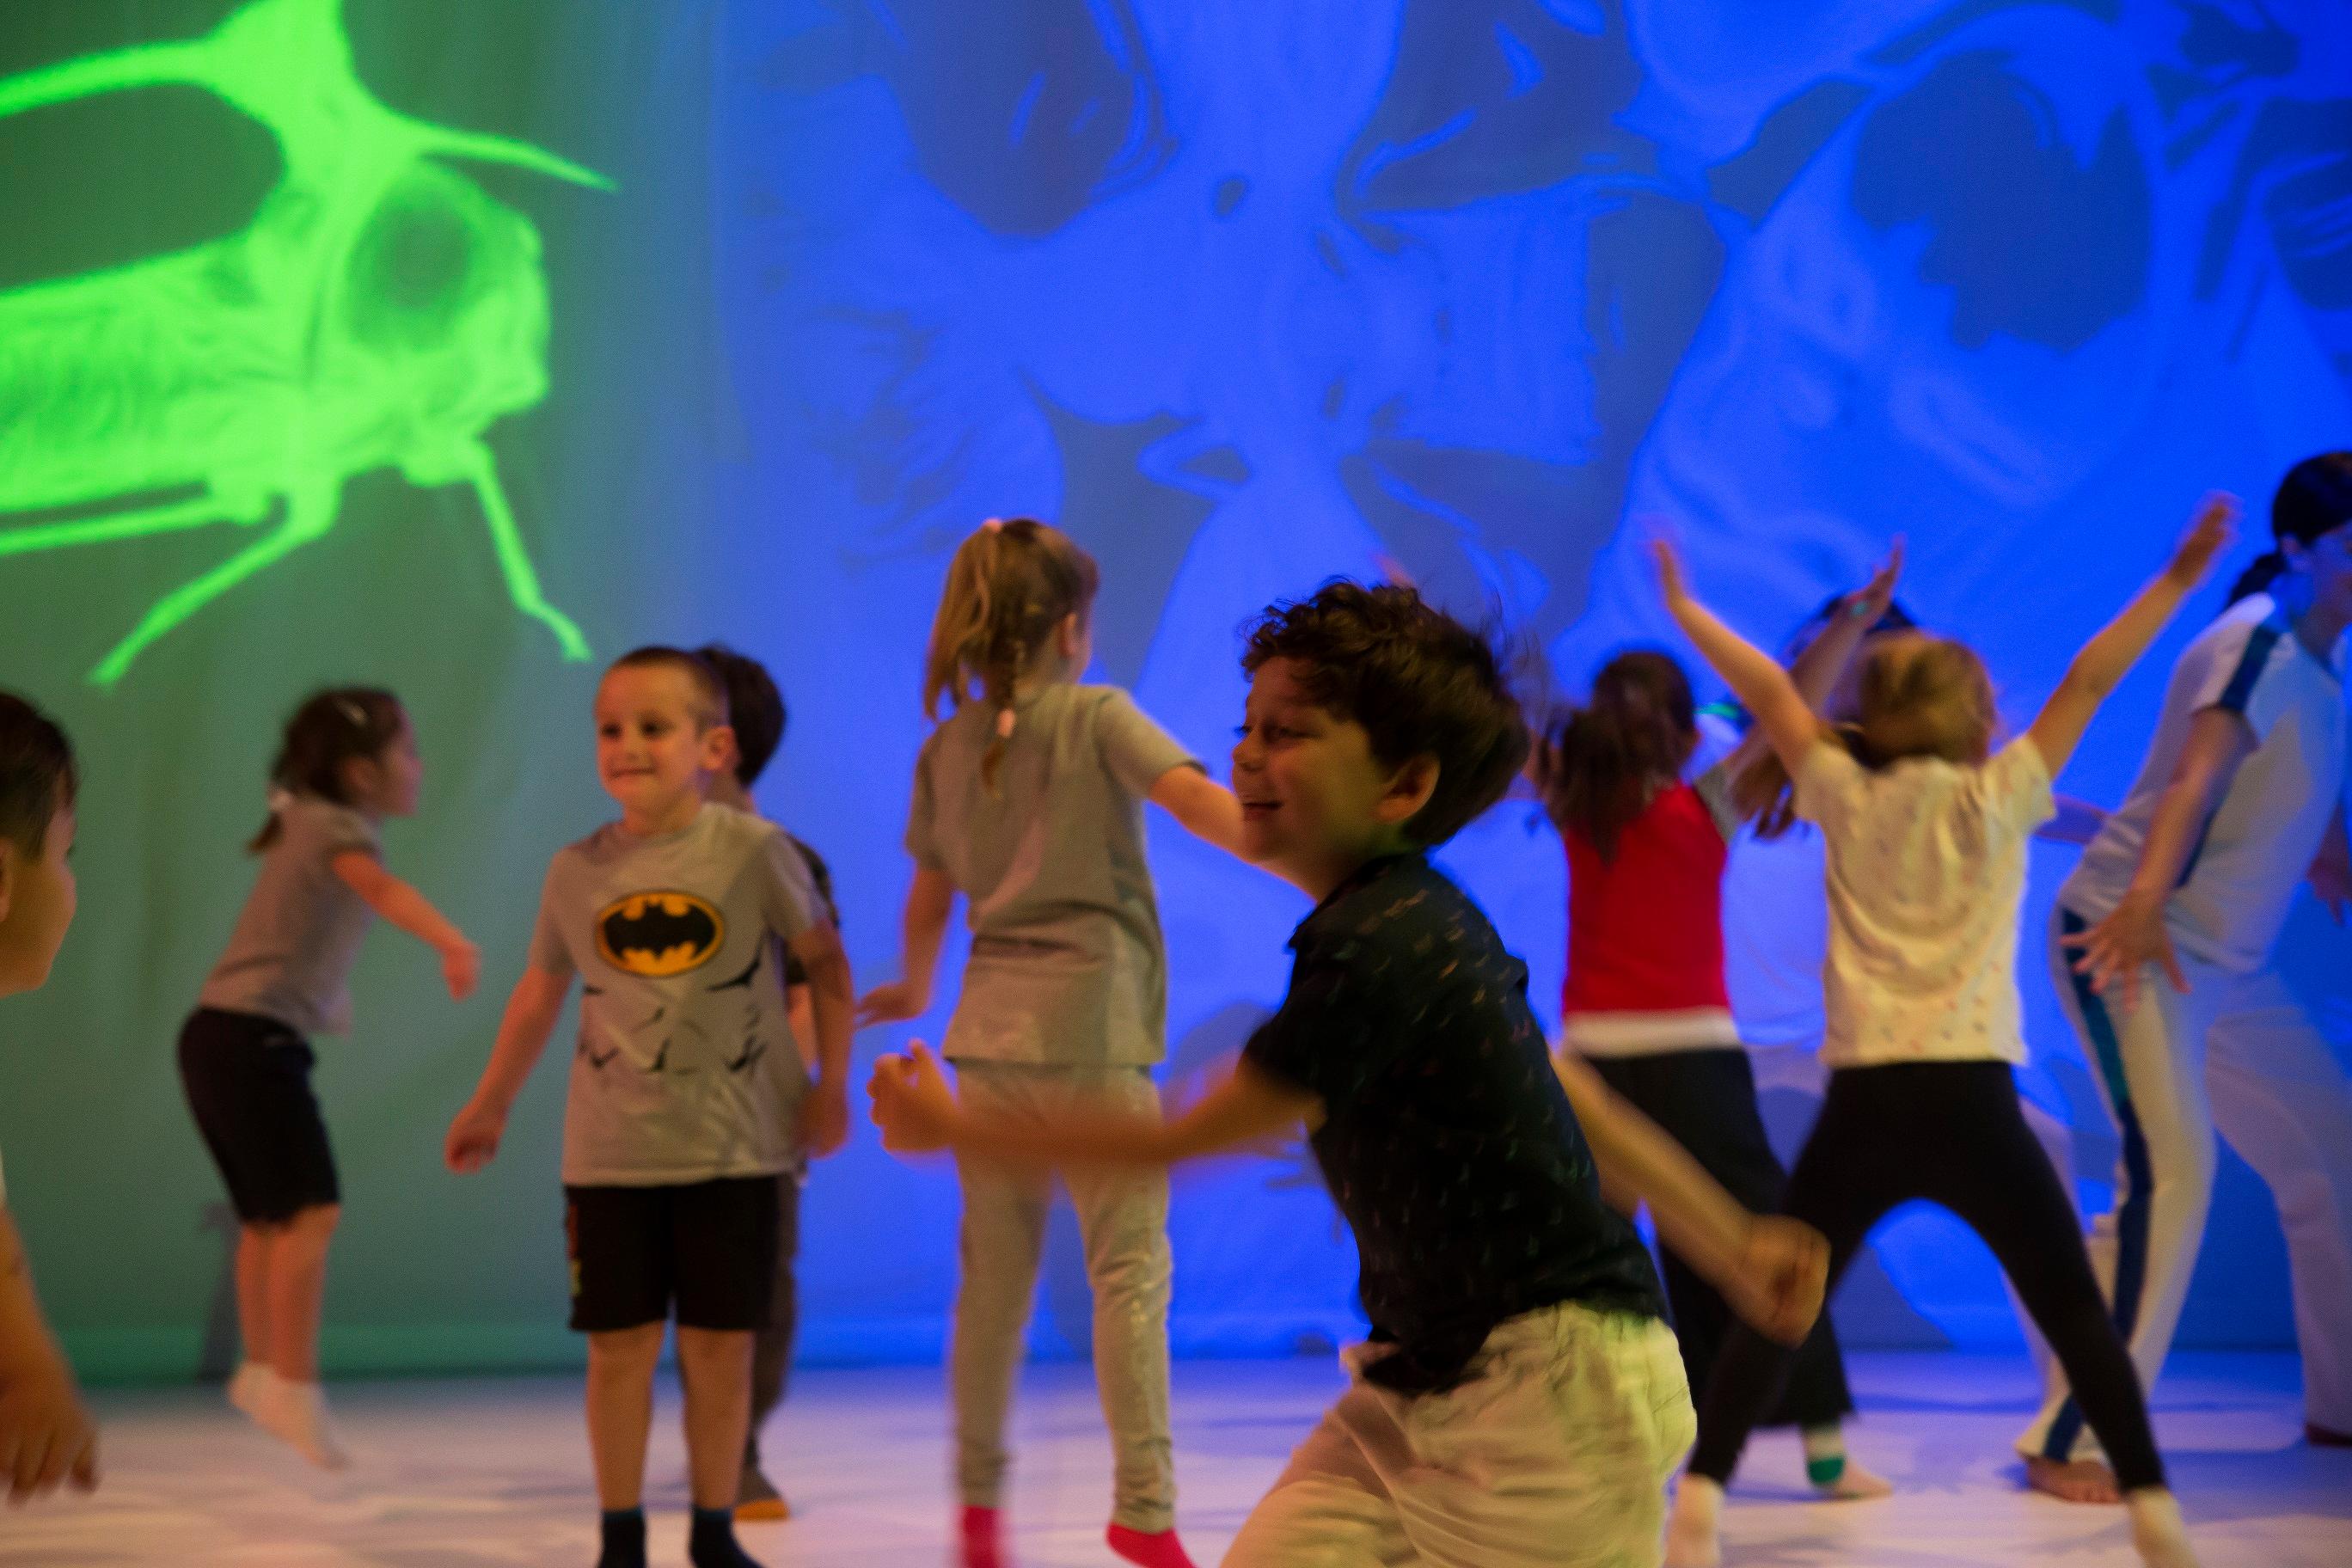 「国际综艺合家欢」将于七月二十四日至二十九日带来意大利TPO剧团沉浸式互动舞蹈剧场《小豆丁大手笔》。节目结合艺术、游戏和学习，邀请小朋友参与演出，一起手舞足蹈，建造理想中的绿色城市。